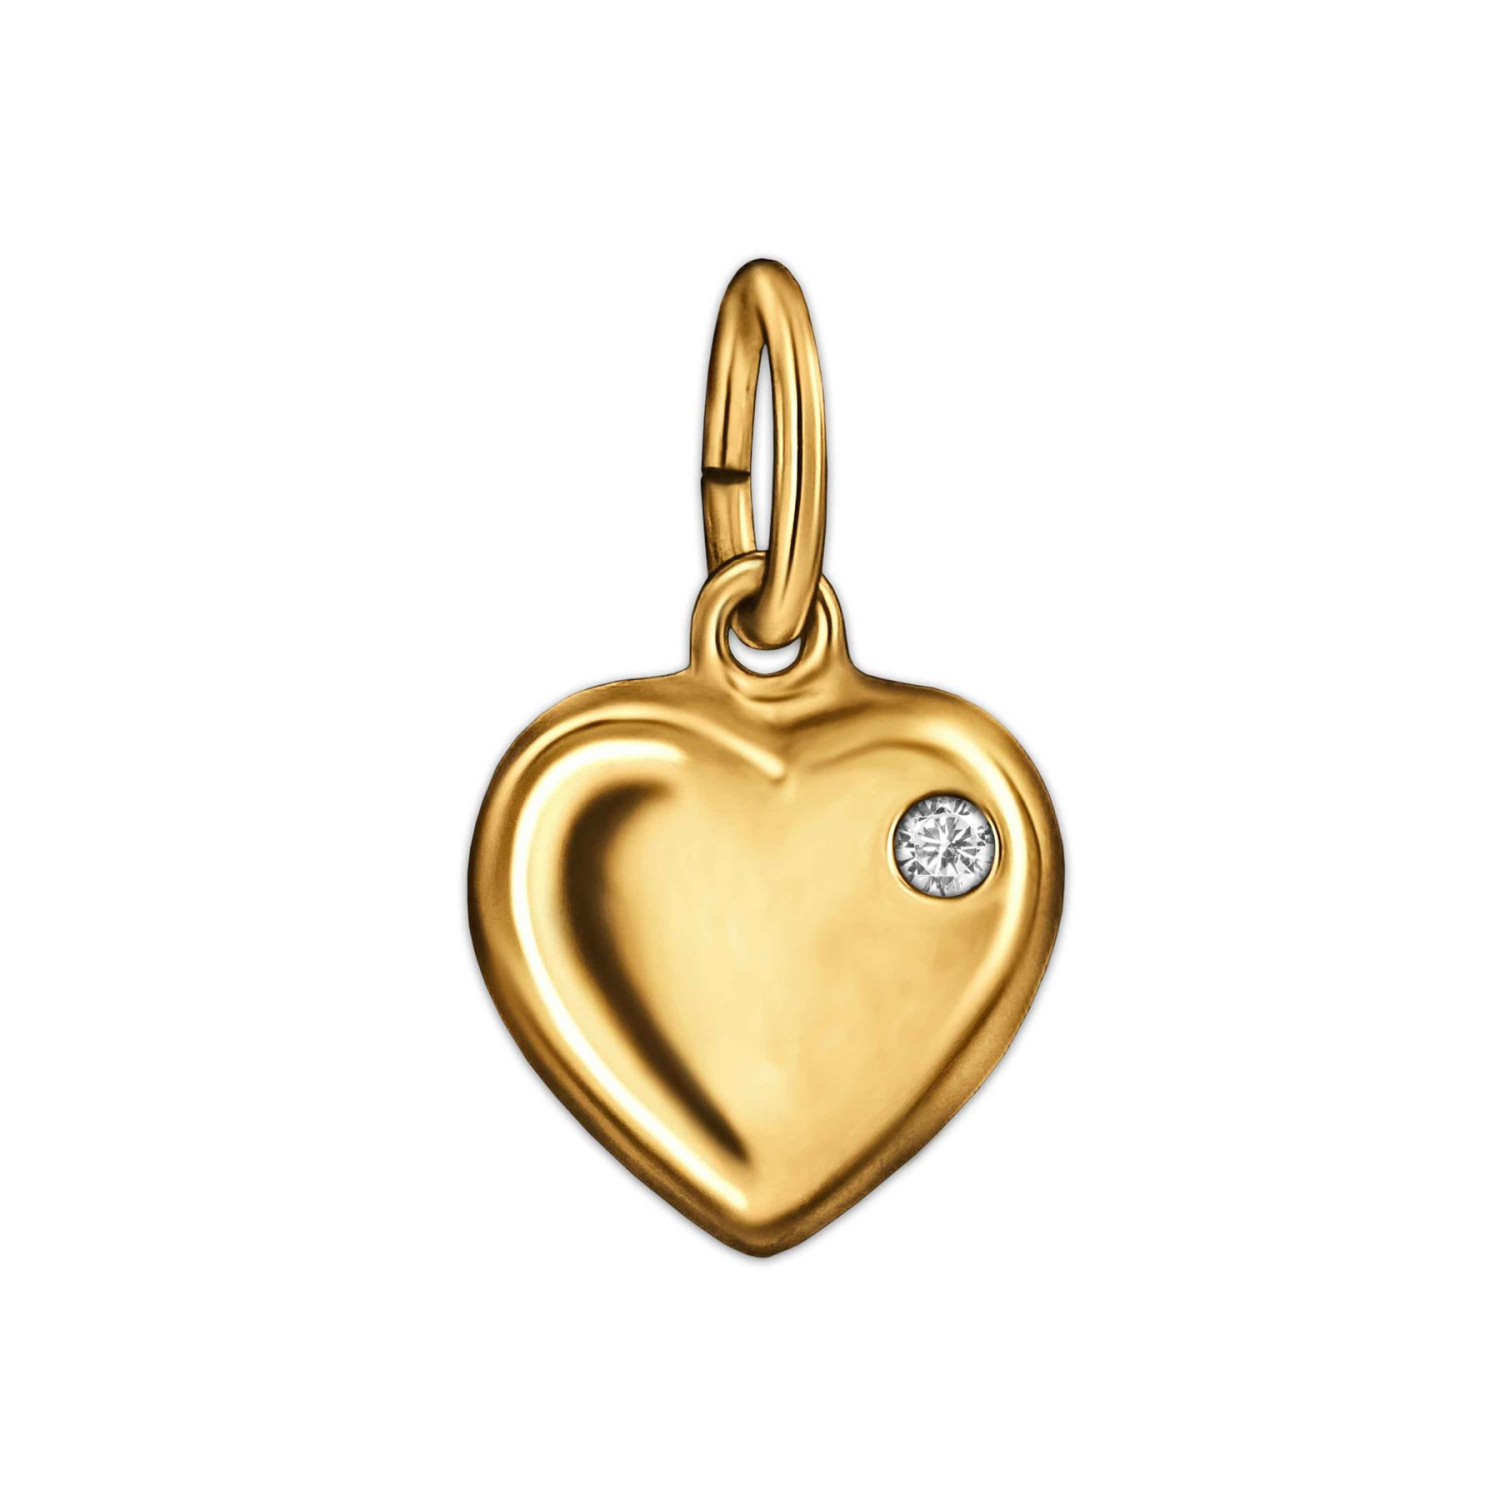 Goldener kleiner Anhänger Mini Herz 8 mm mit 1 Zirkonia rechts oben im Herzbogen glänzend 333 GOLD 8 KARAT